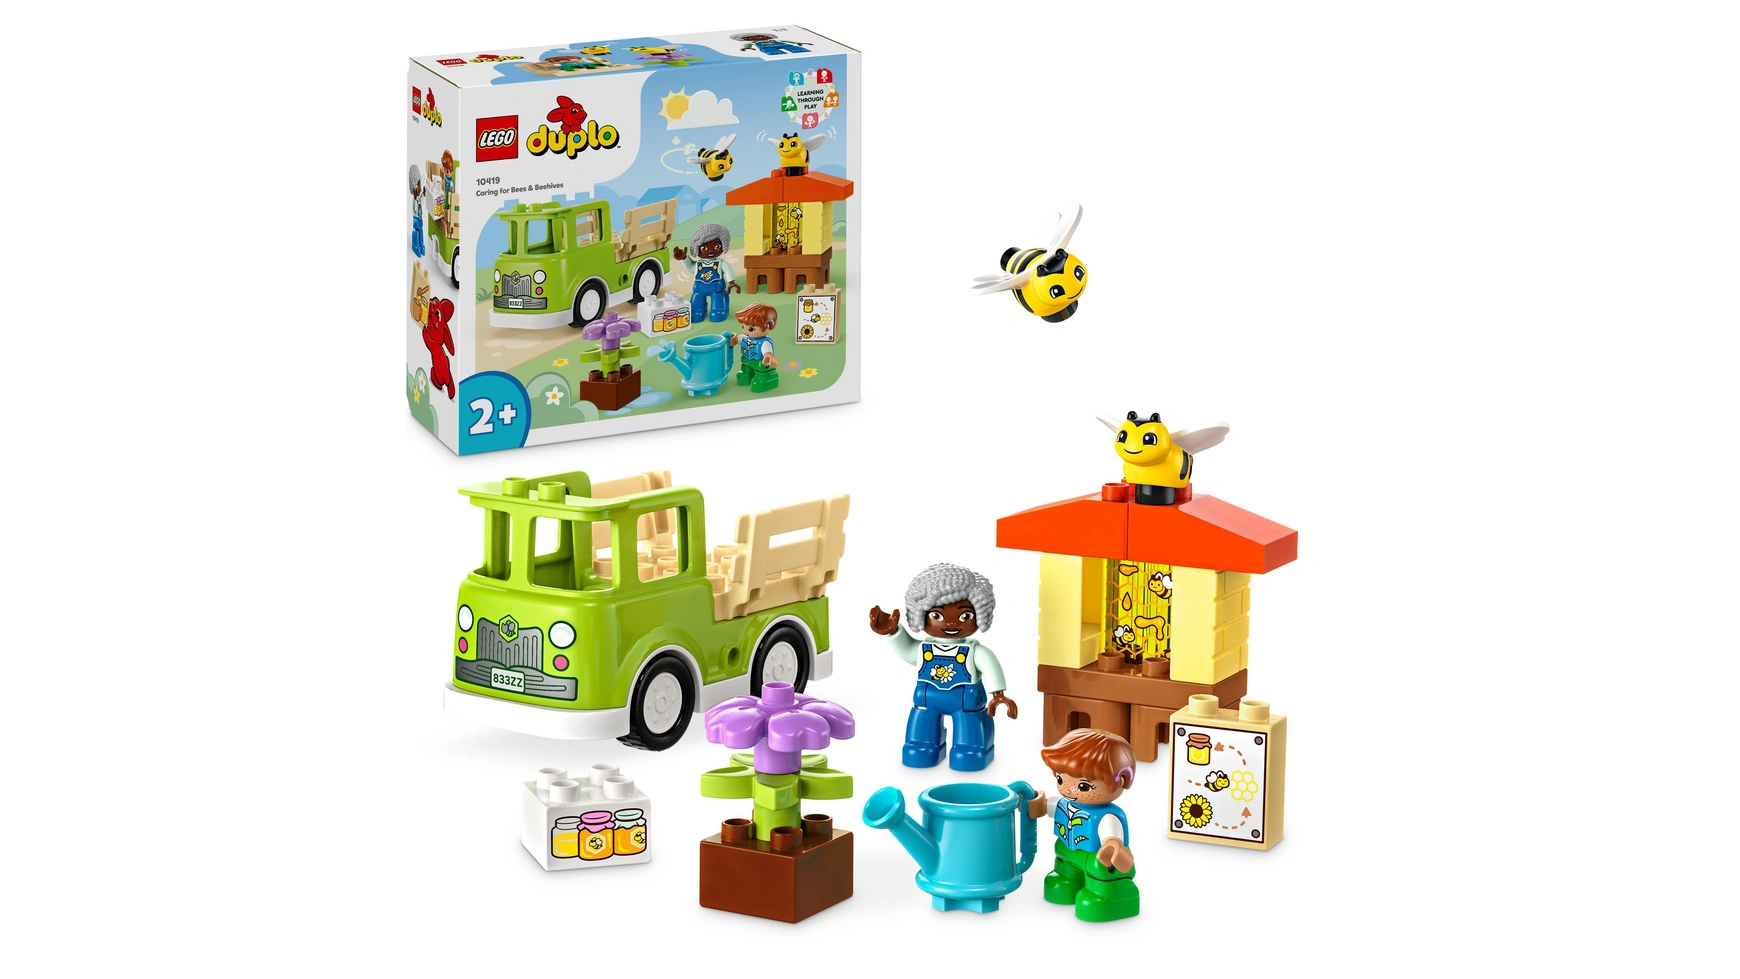 Lego DUPLO Town Пчеловодство и ульи, игрушки для животных для детей от 2 лет lego duplo моя первая увлекательная развивающая игрушка для сборки для детей от 1 5 лет и старше